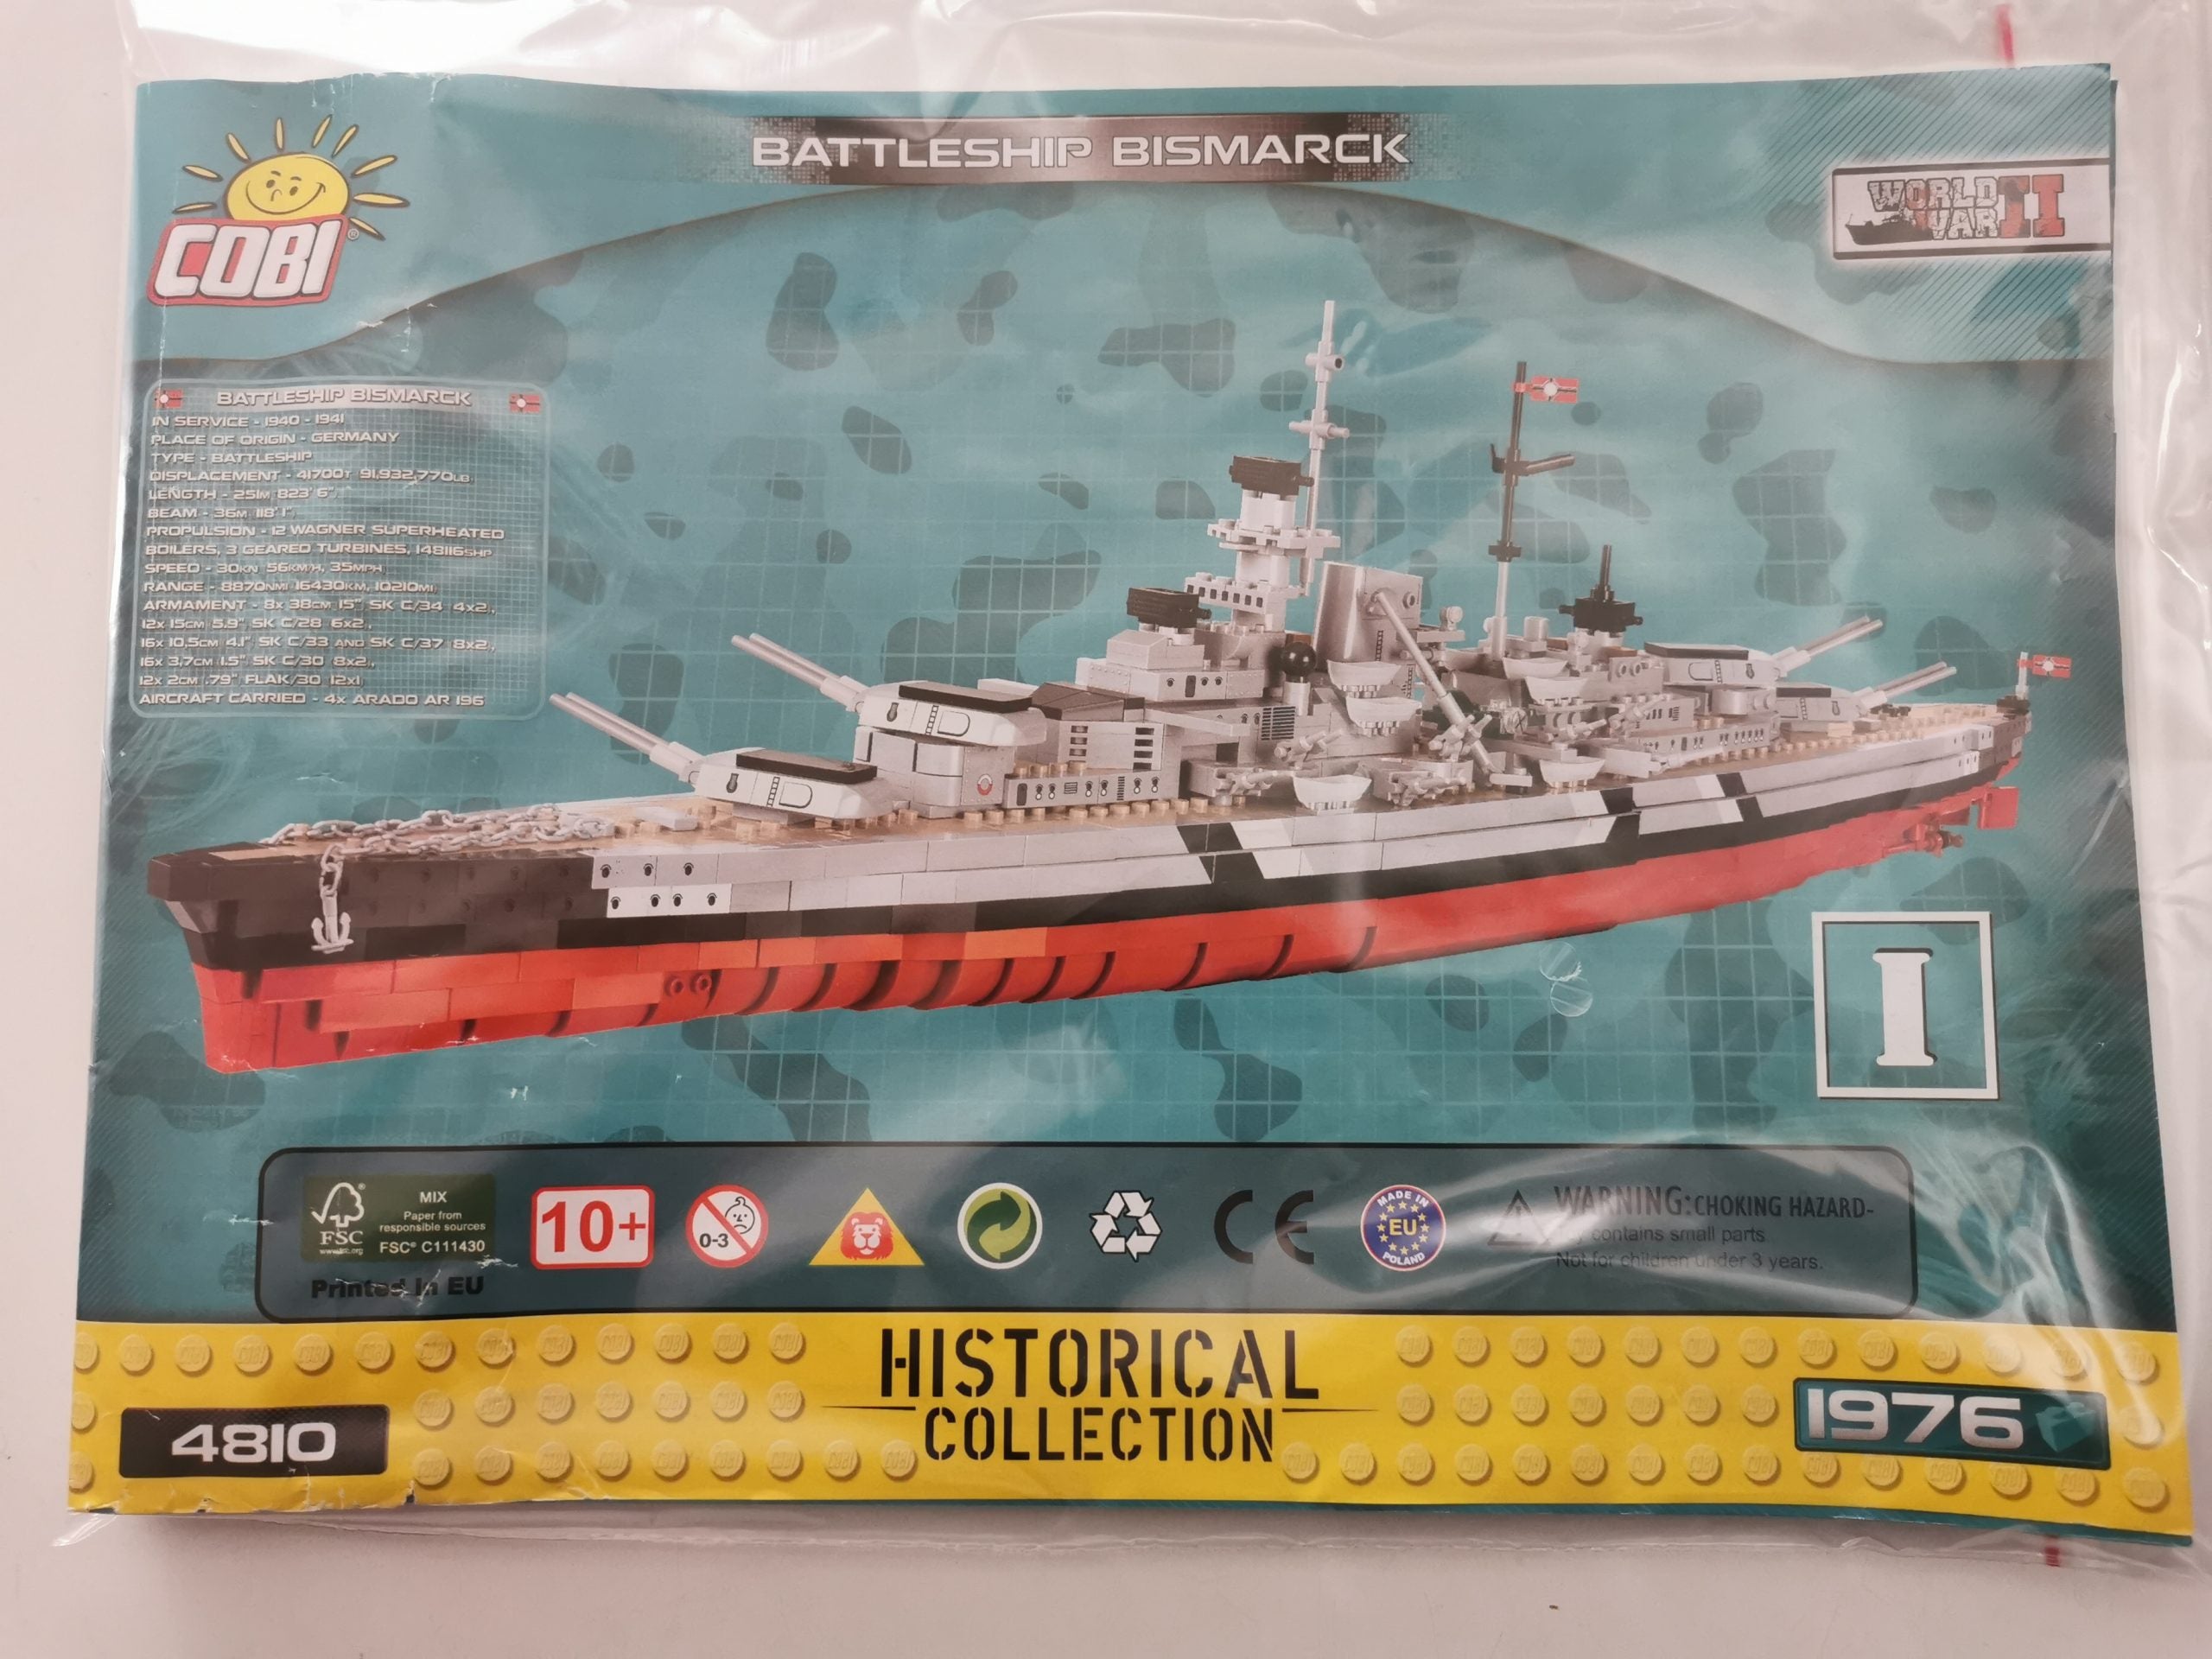 Cobi 4810 Battleship Bismarck used